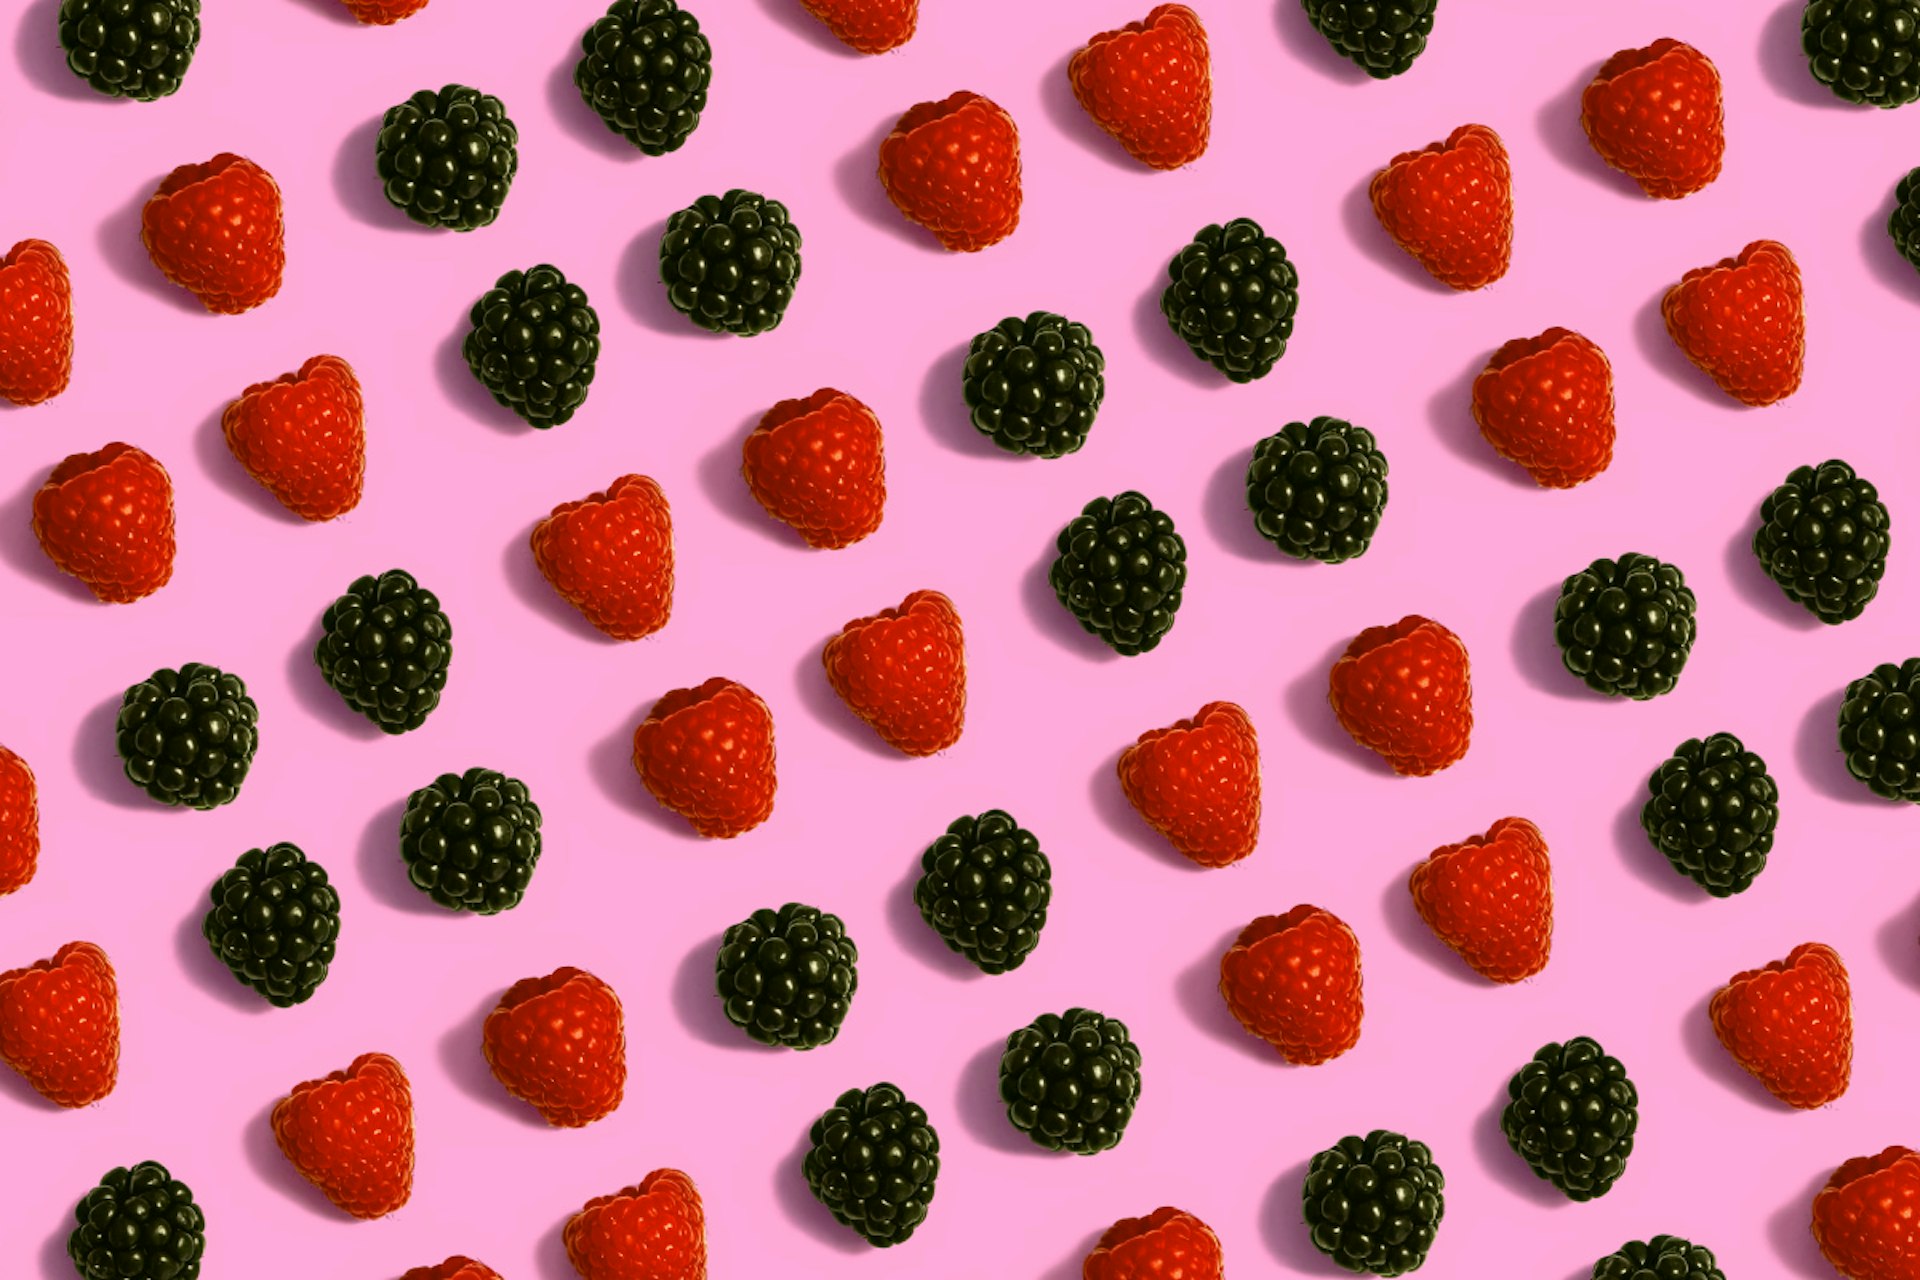 Rows of blackberries and raspberries.